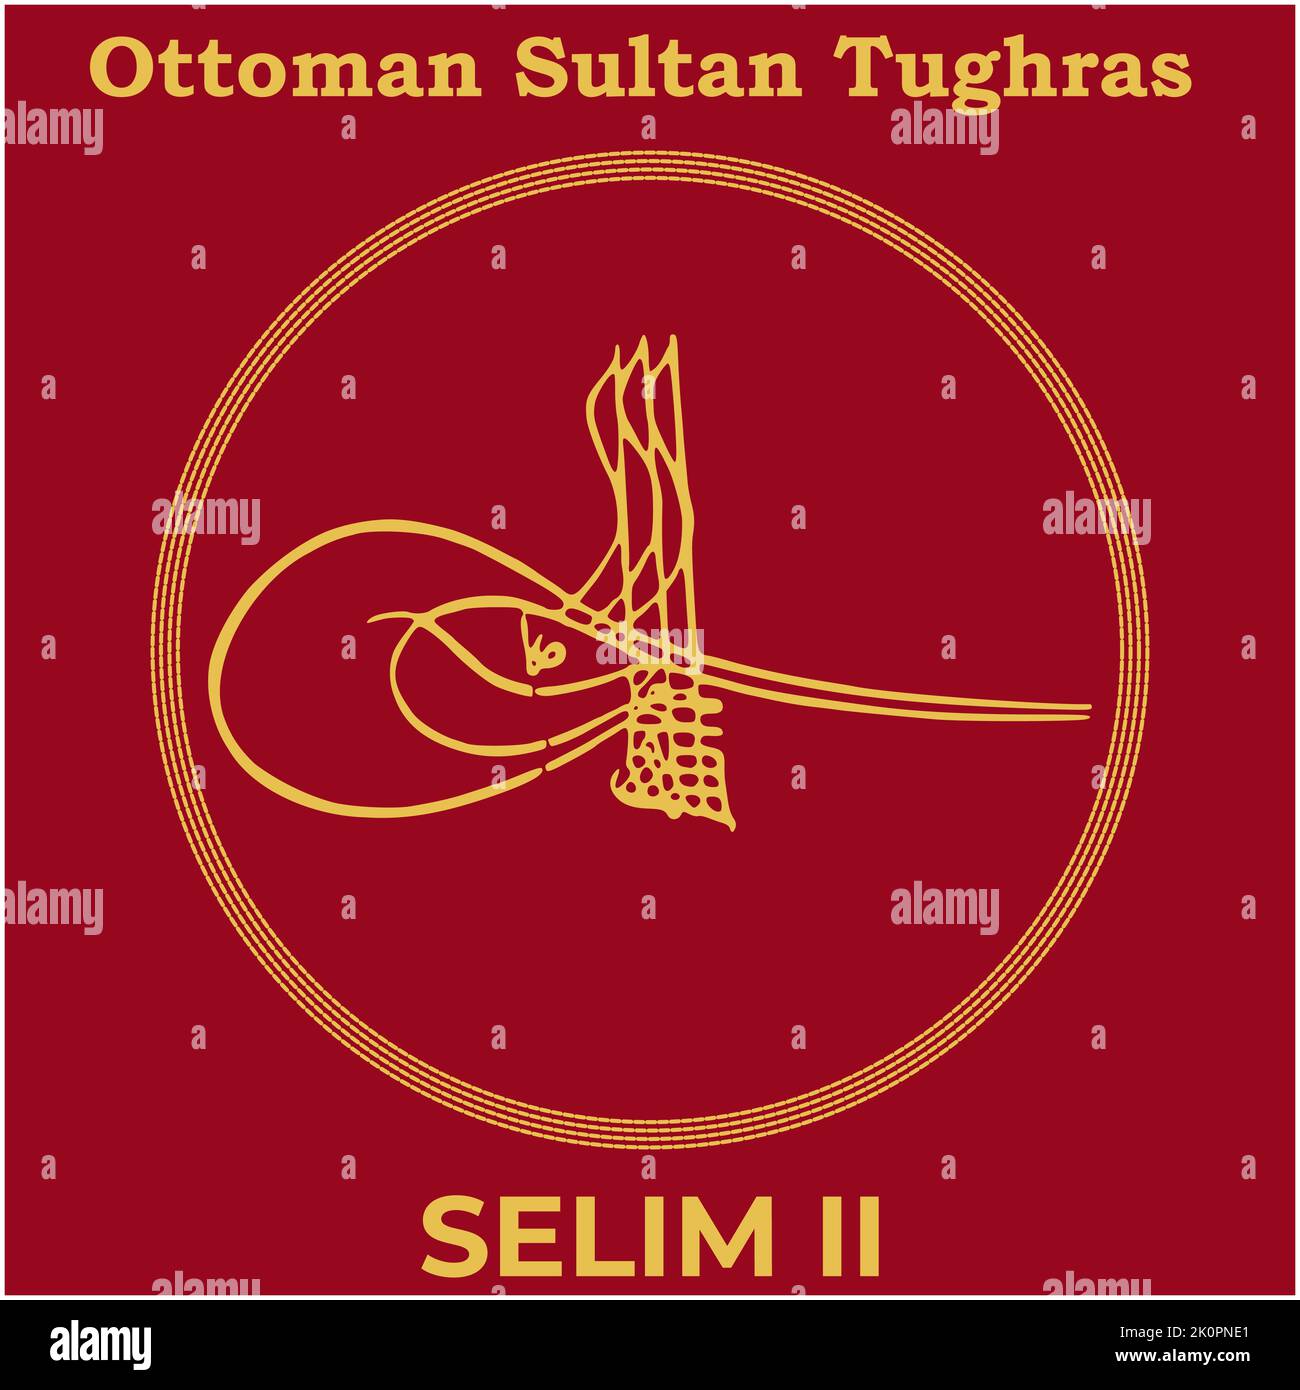 Vektorbild mit Tughra-Signatur des osmanischen elften Sultans Selim II, Tughra von Selim II mit traditionellem türkischen Malhintergrund. Stock Vektor